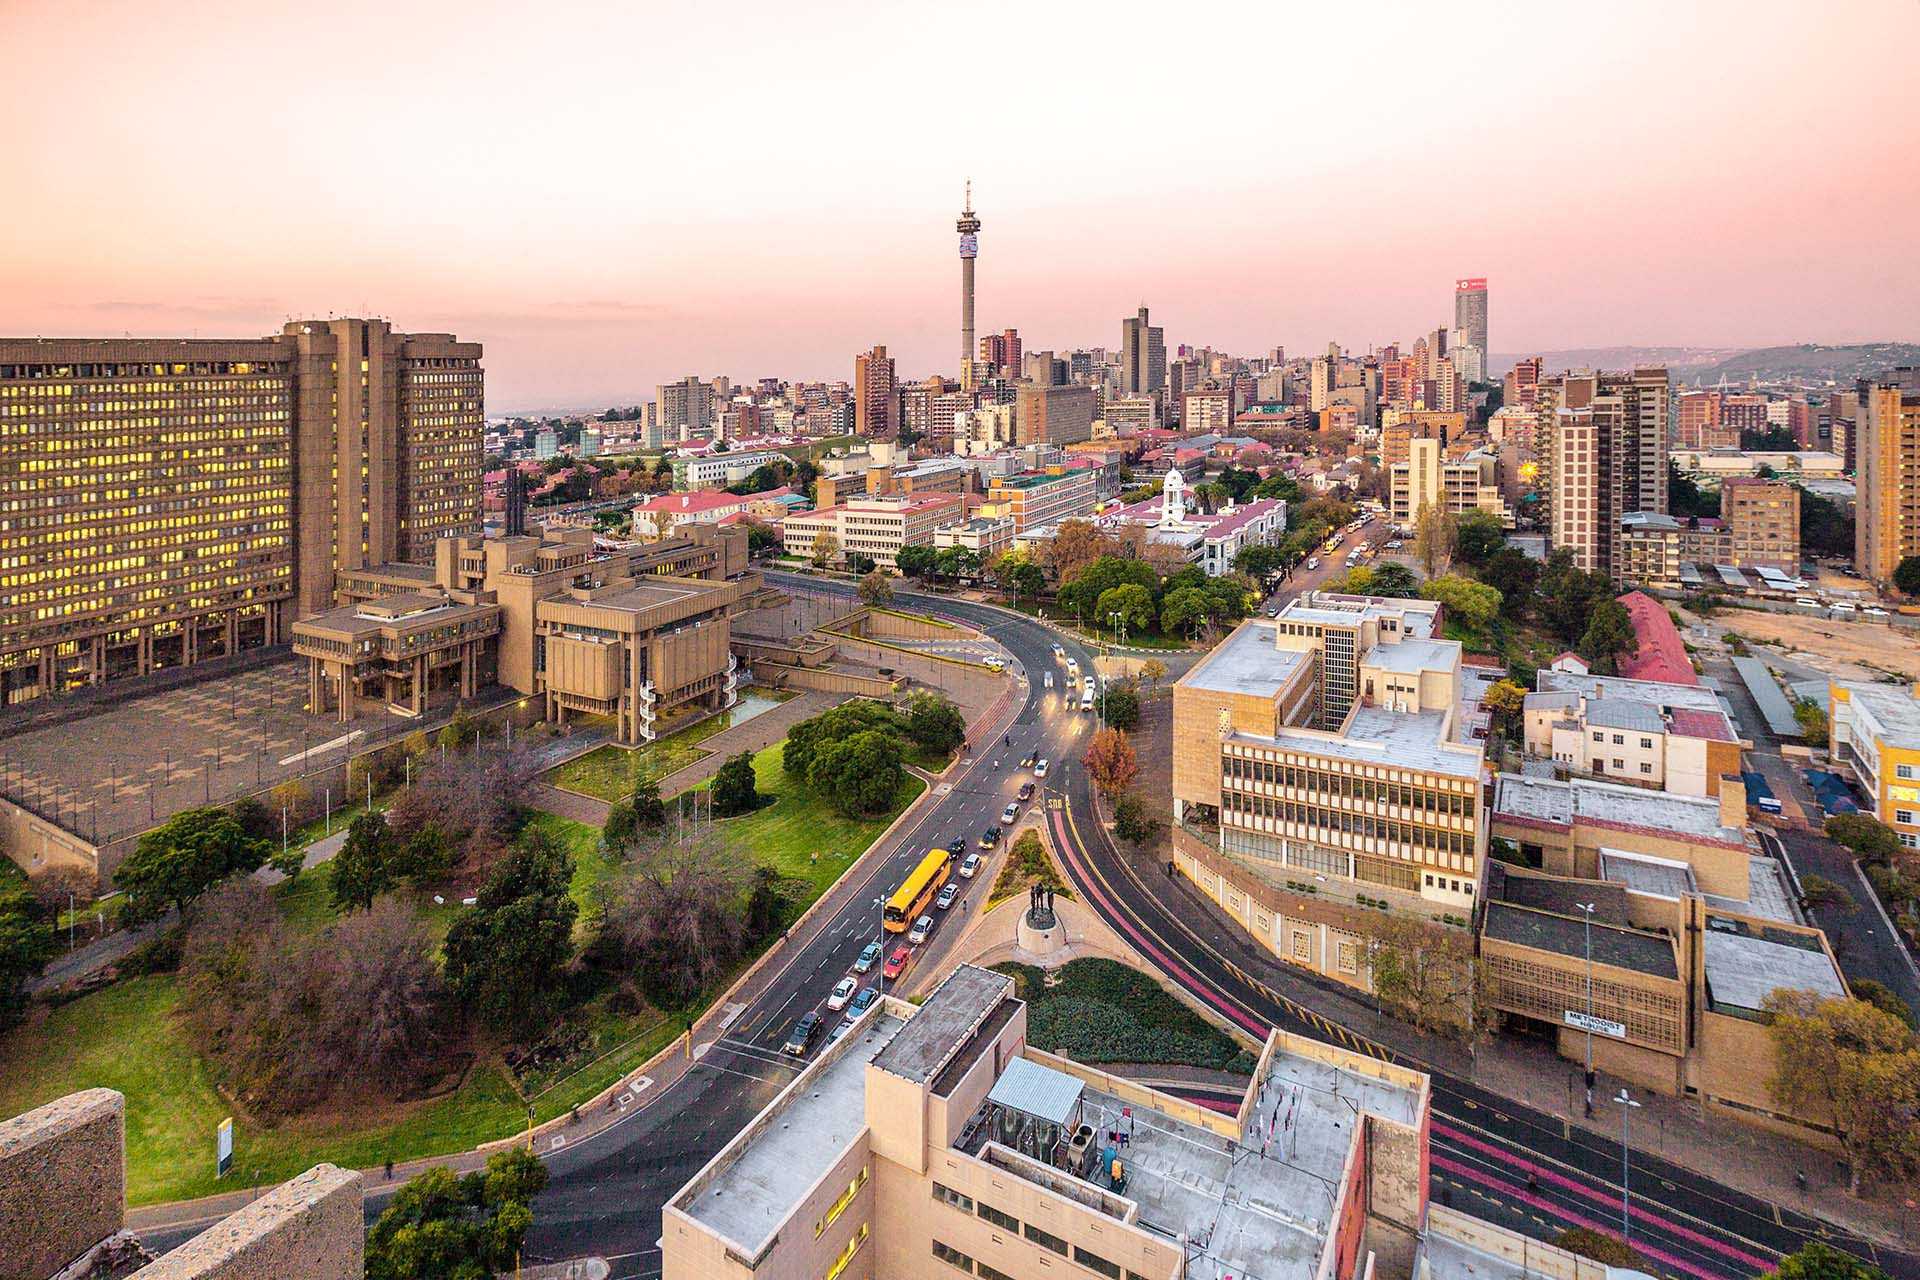 Johannesburgo es la ciudad más grande de Sudáfrica y capital de la provincia de Gauteng